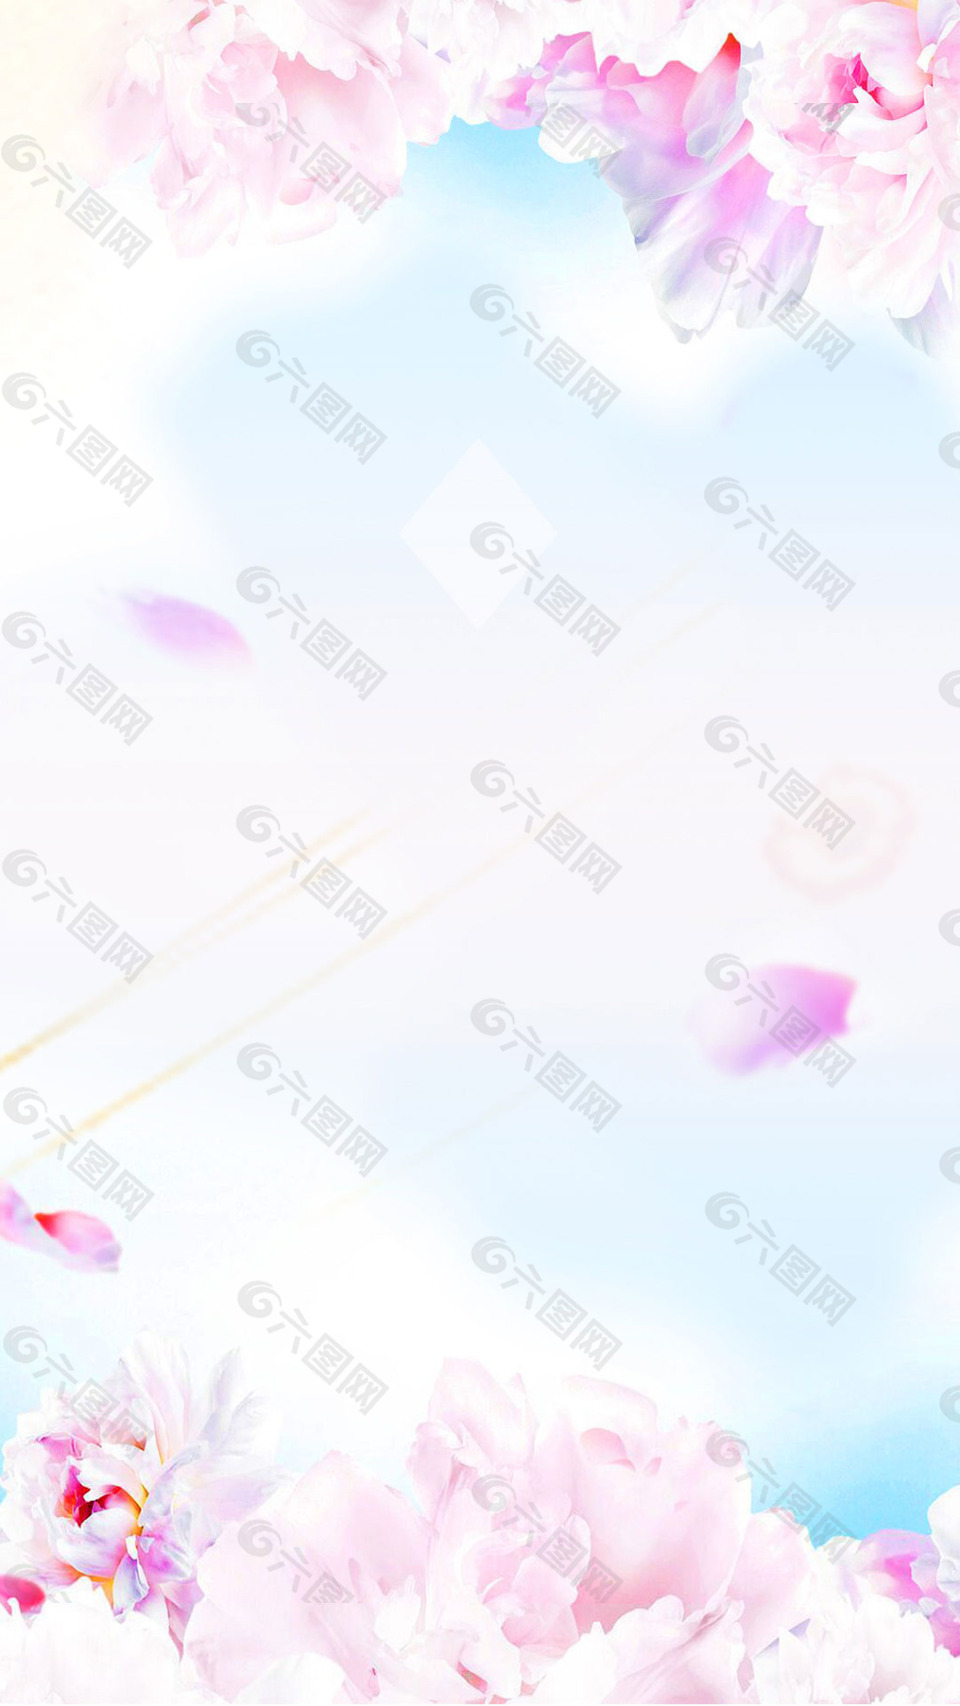 梦幻粉色花朵H5背景素材